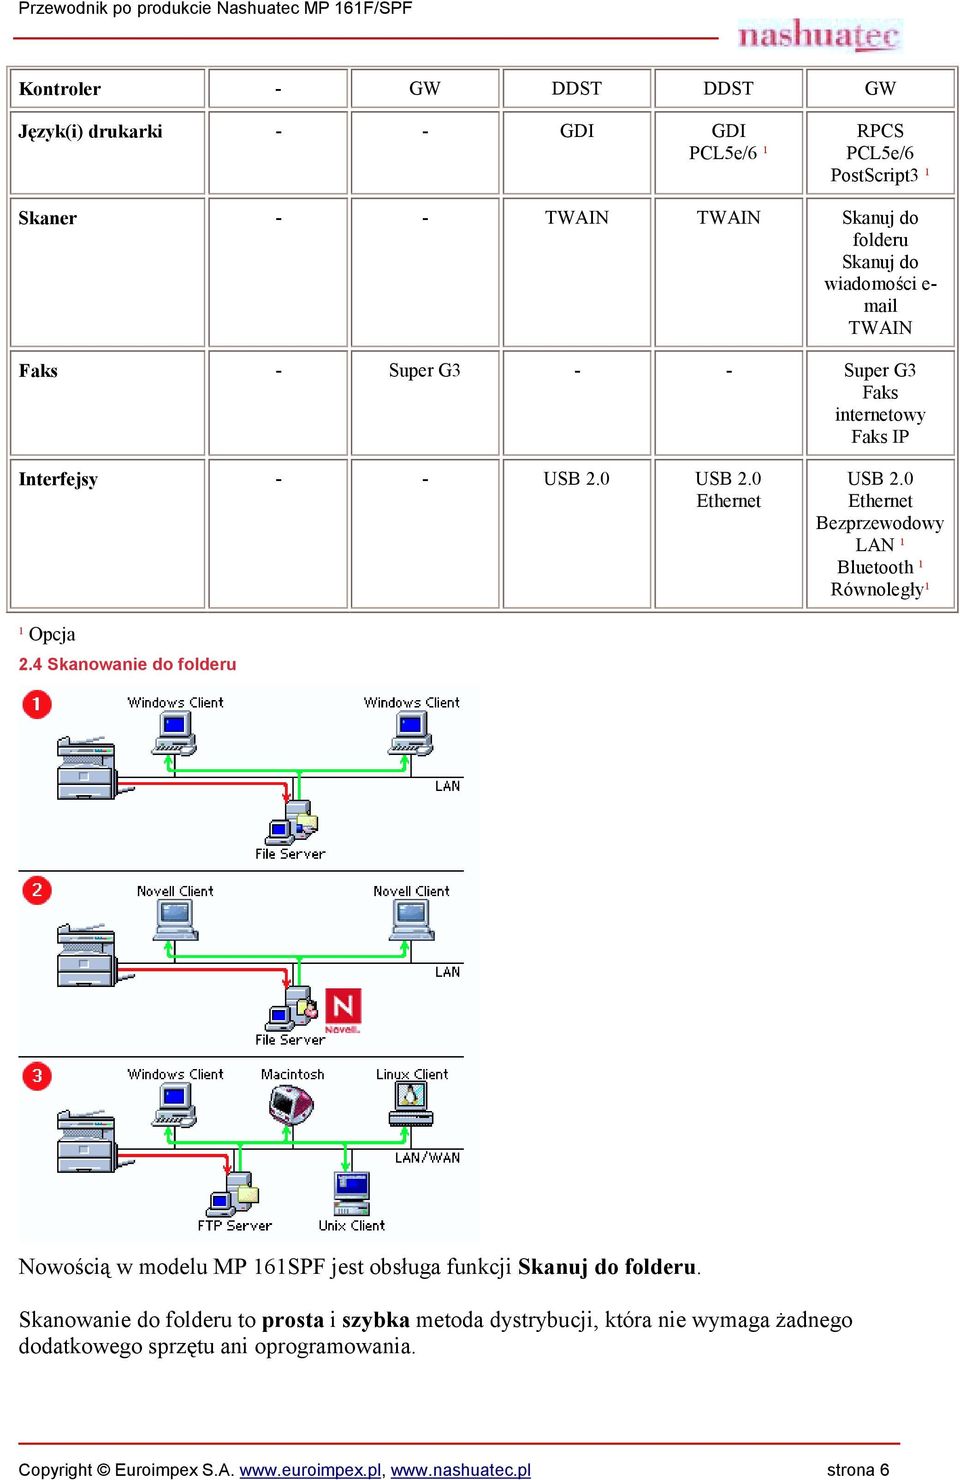 0 Ethernet Bezprzewodowy LAN ¹ Bluetooth ¹ Równoległy¹ ¹ Opcja 2.4 Skanowanie do folderu Nowością w modelu MP 161SPF jest obsługa funkcji Skanuj do folderu.